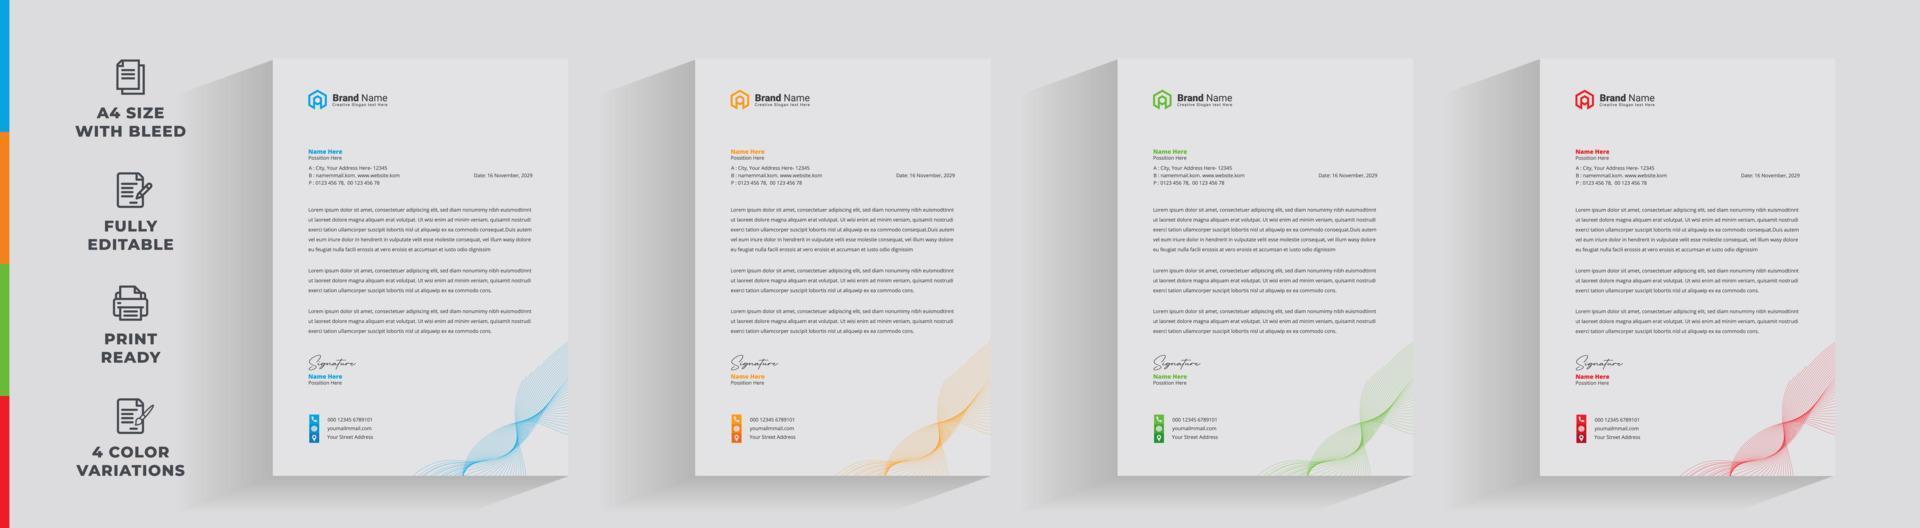 briefpapier zakelijk creatief bedrijf bedrijf minimaal schoon uniek sjabloonontwerp vector